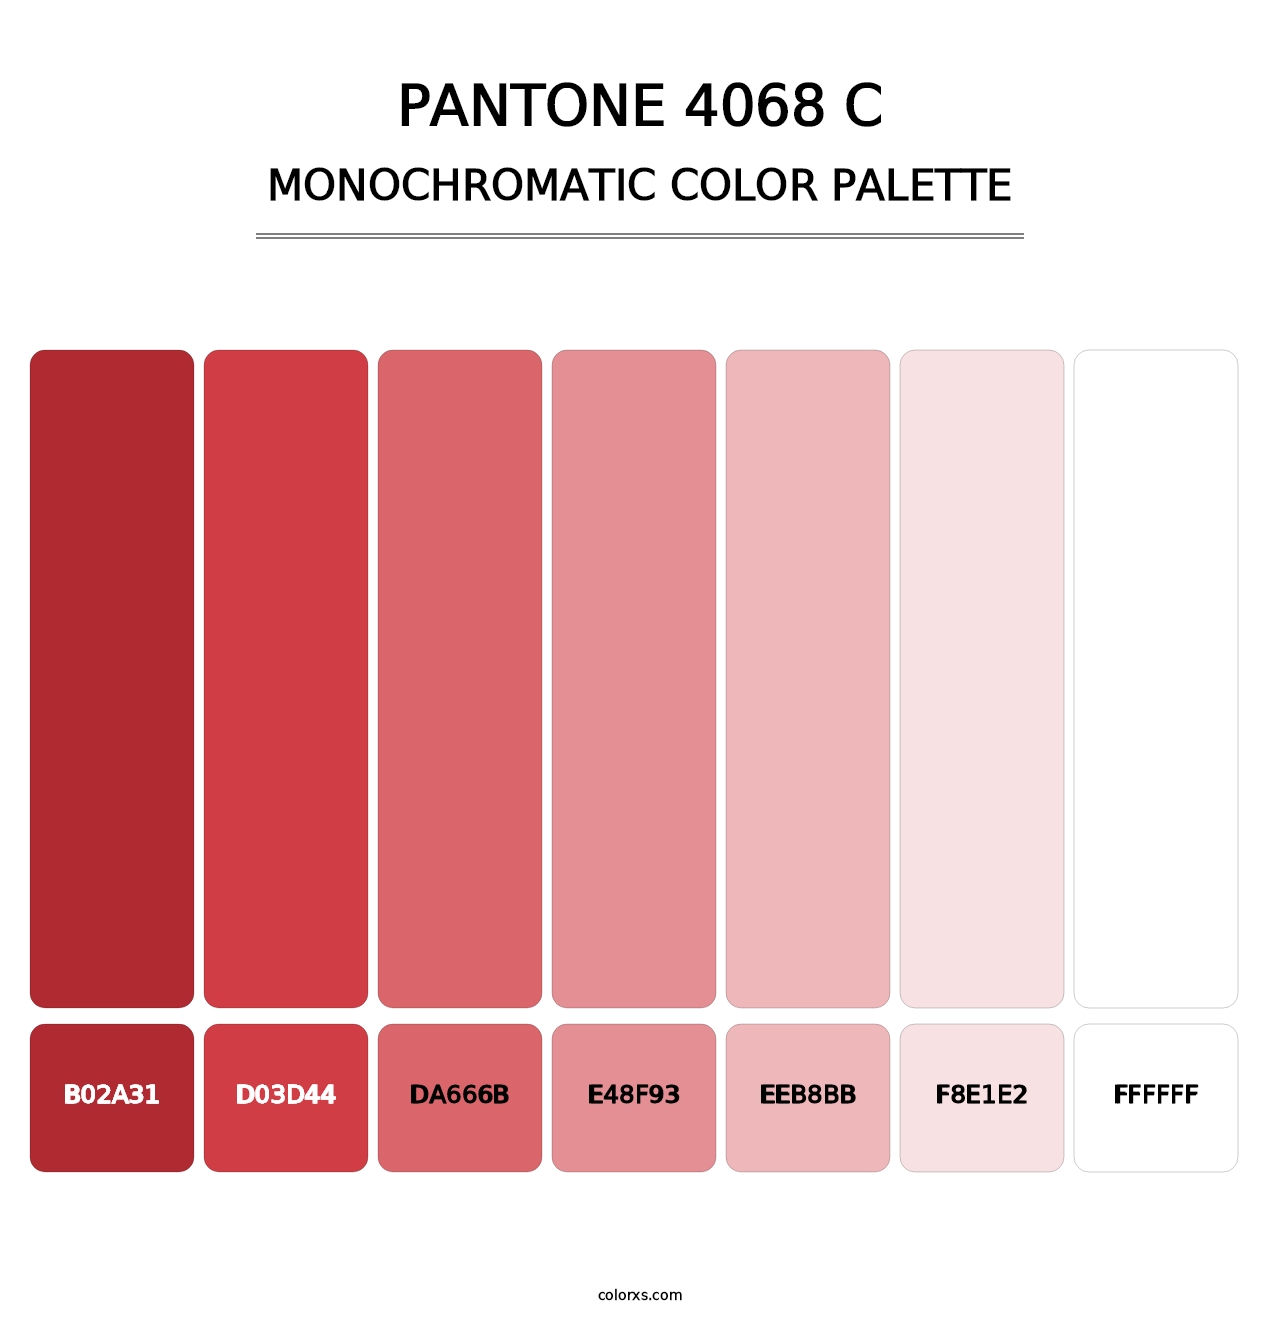 PANTONE 4068 C - Monochromatic Color Palette